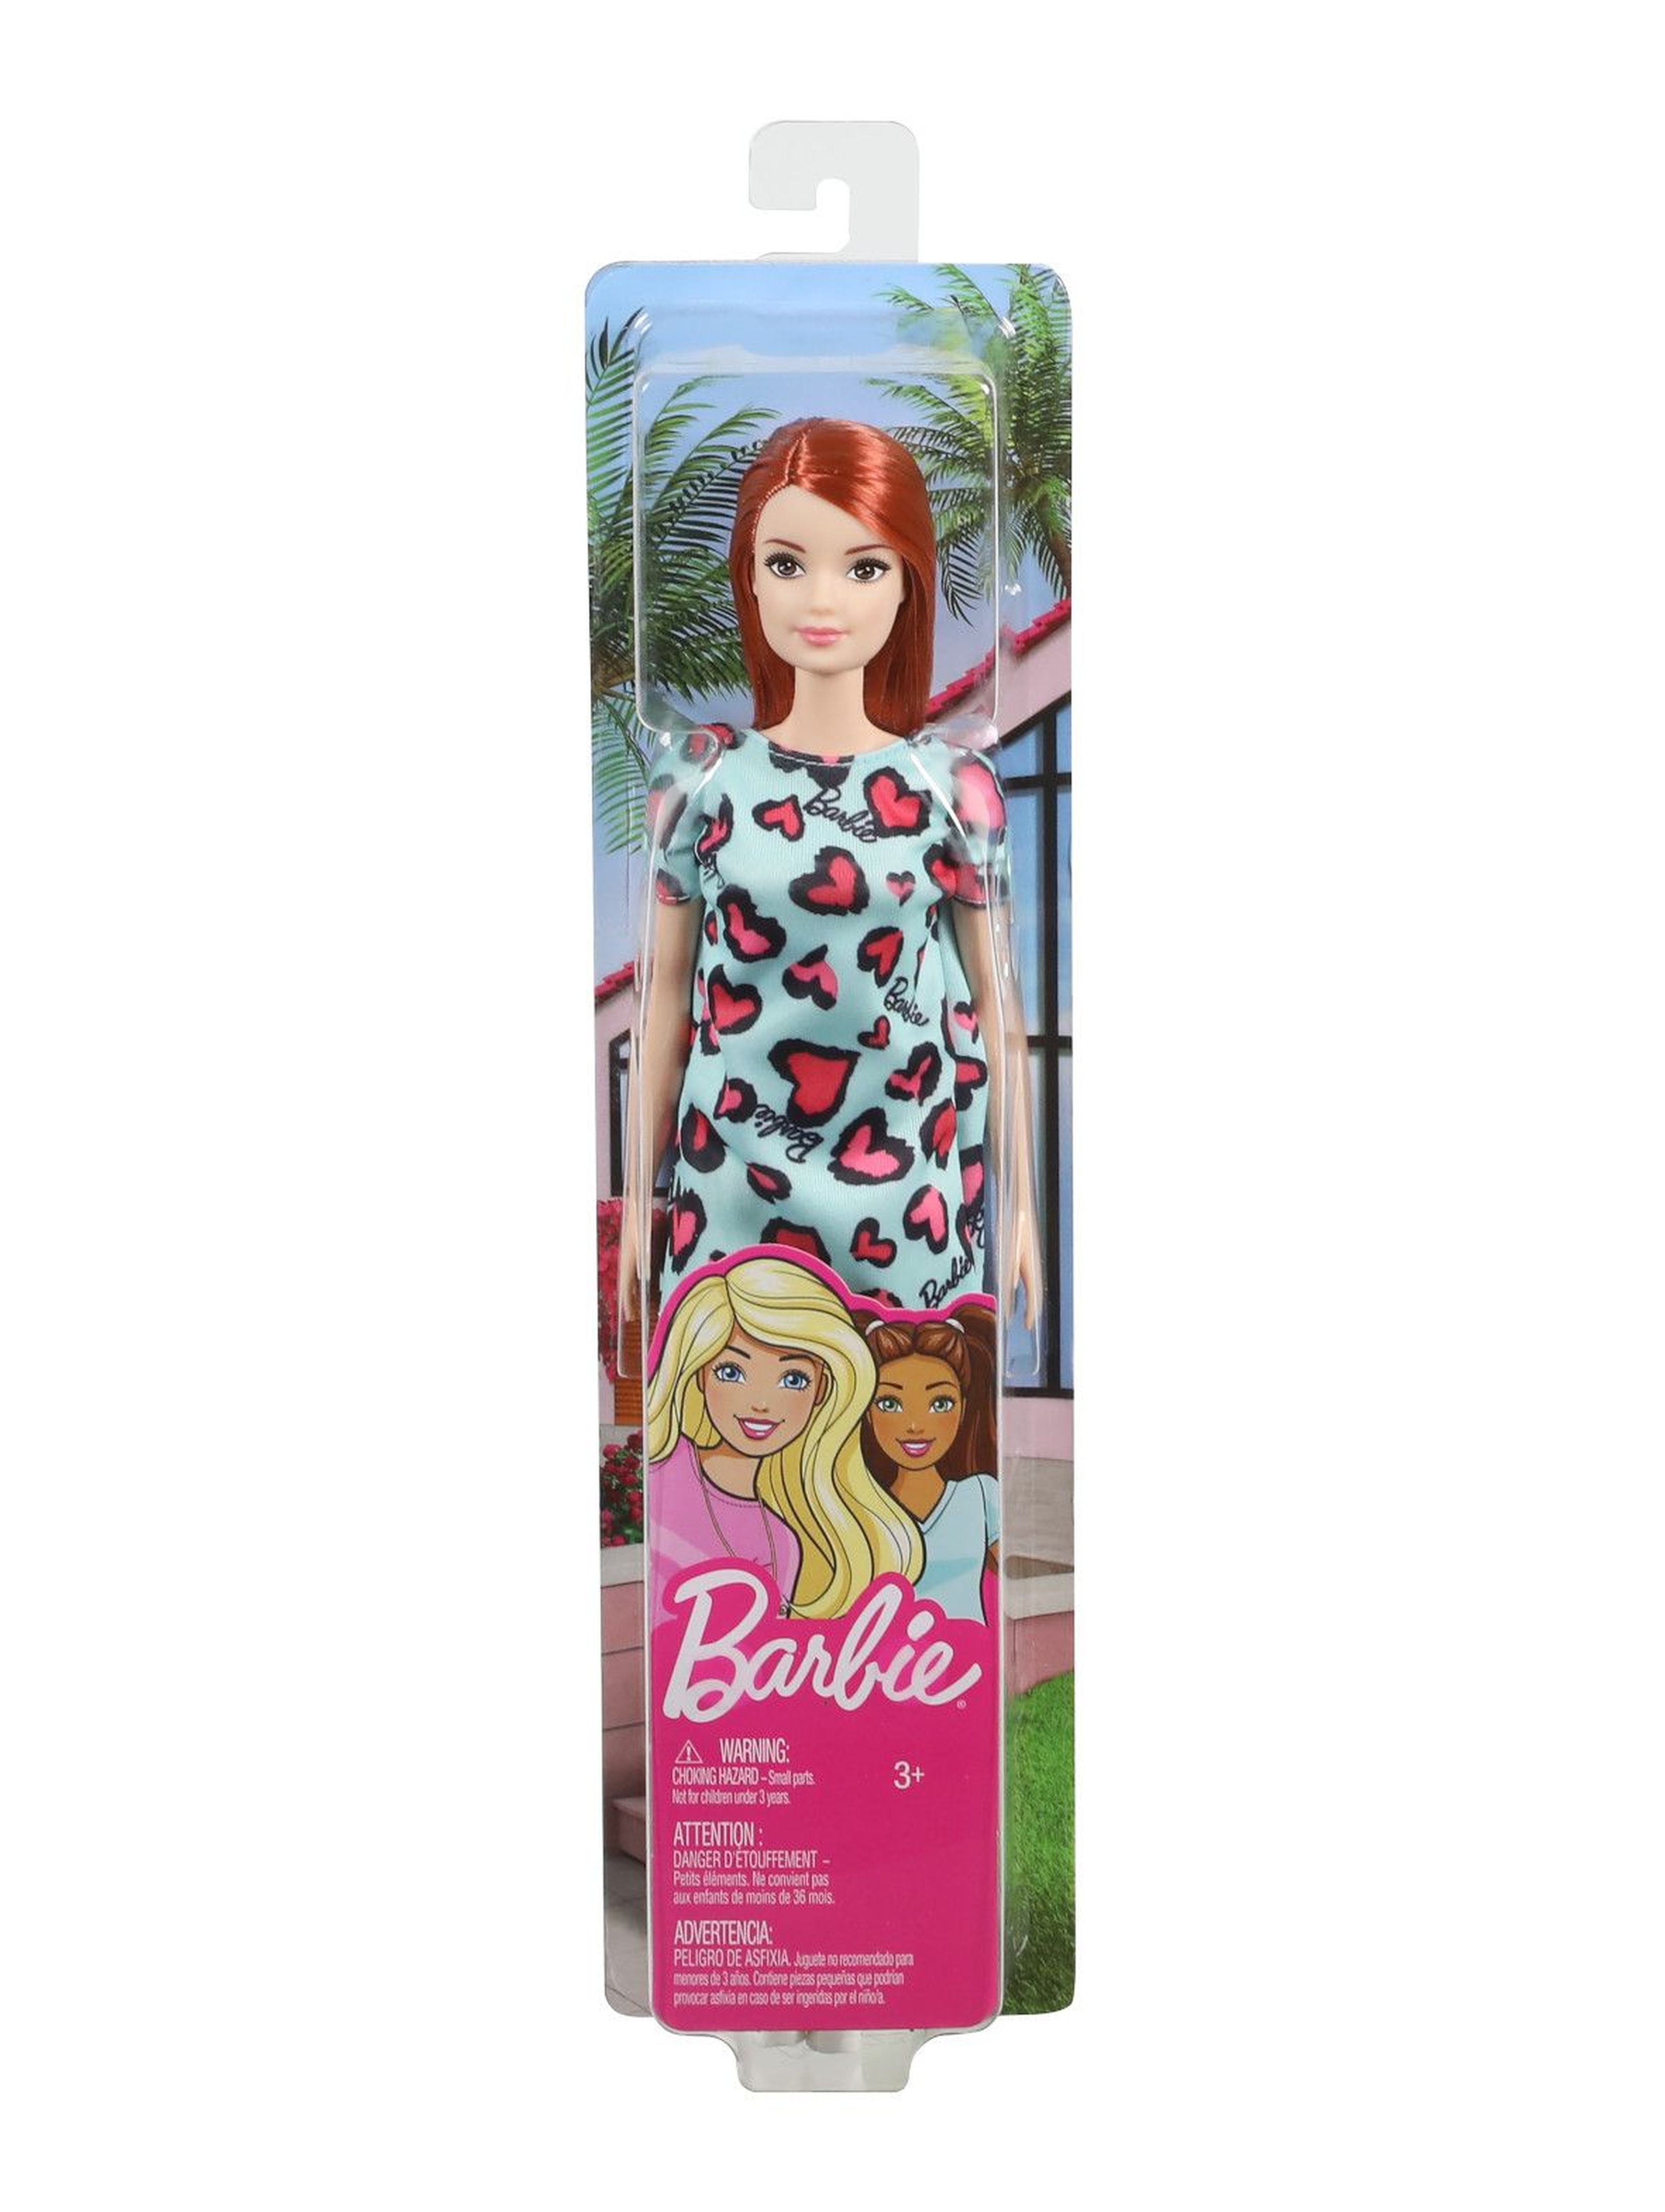 Lalka Barbie szykowna Barbie -wiek 3+